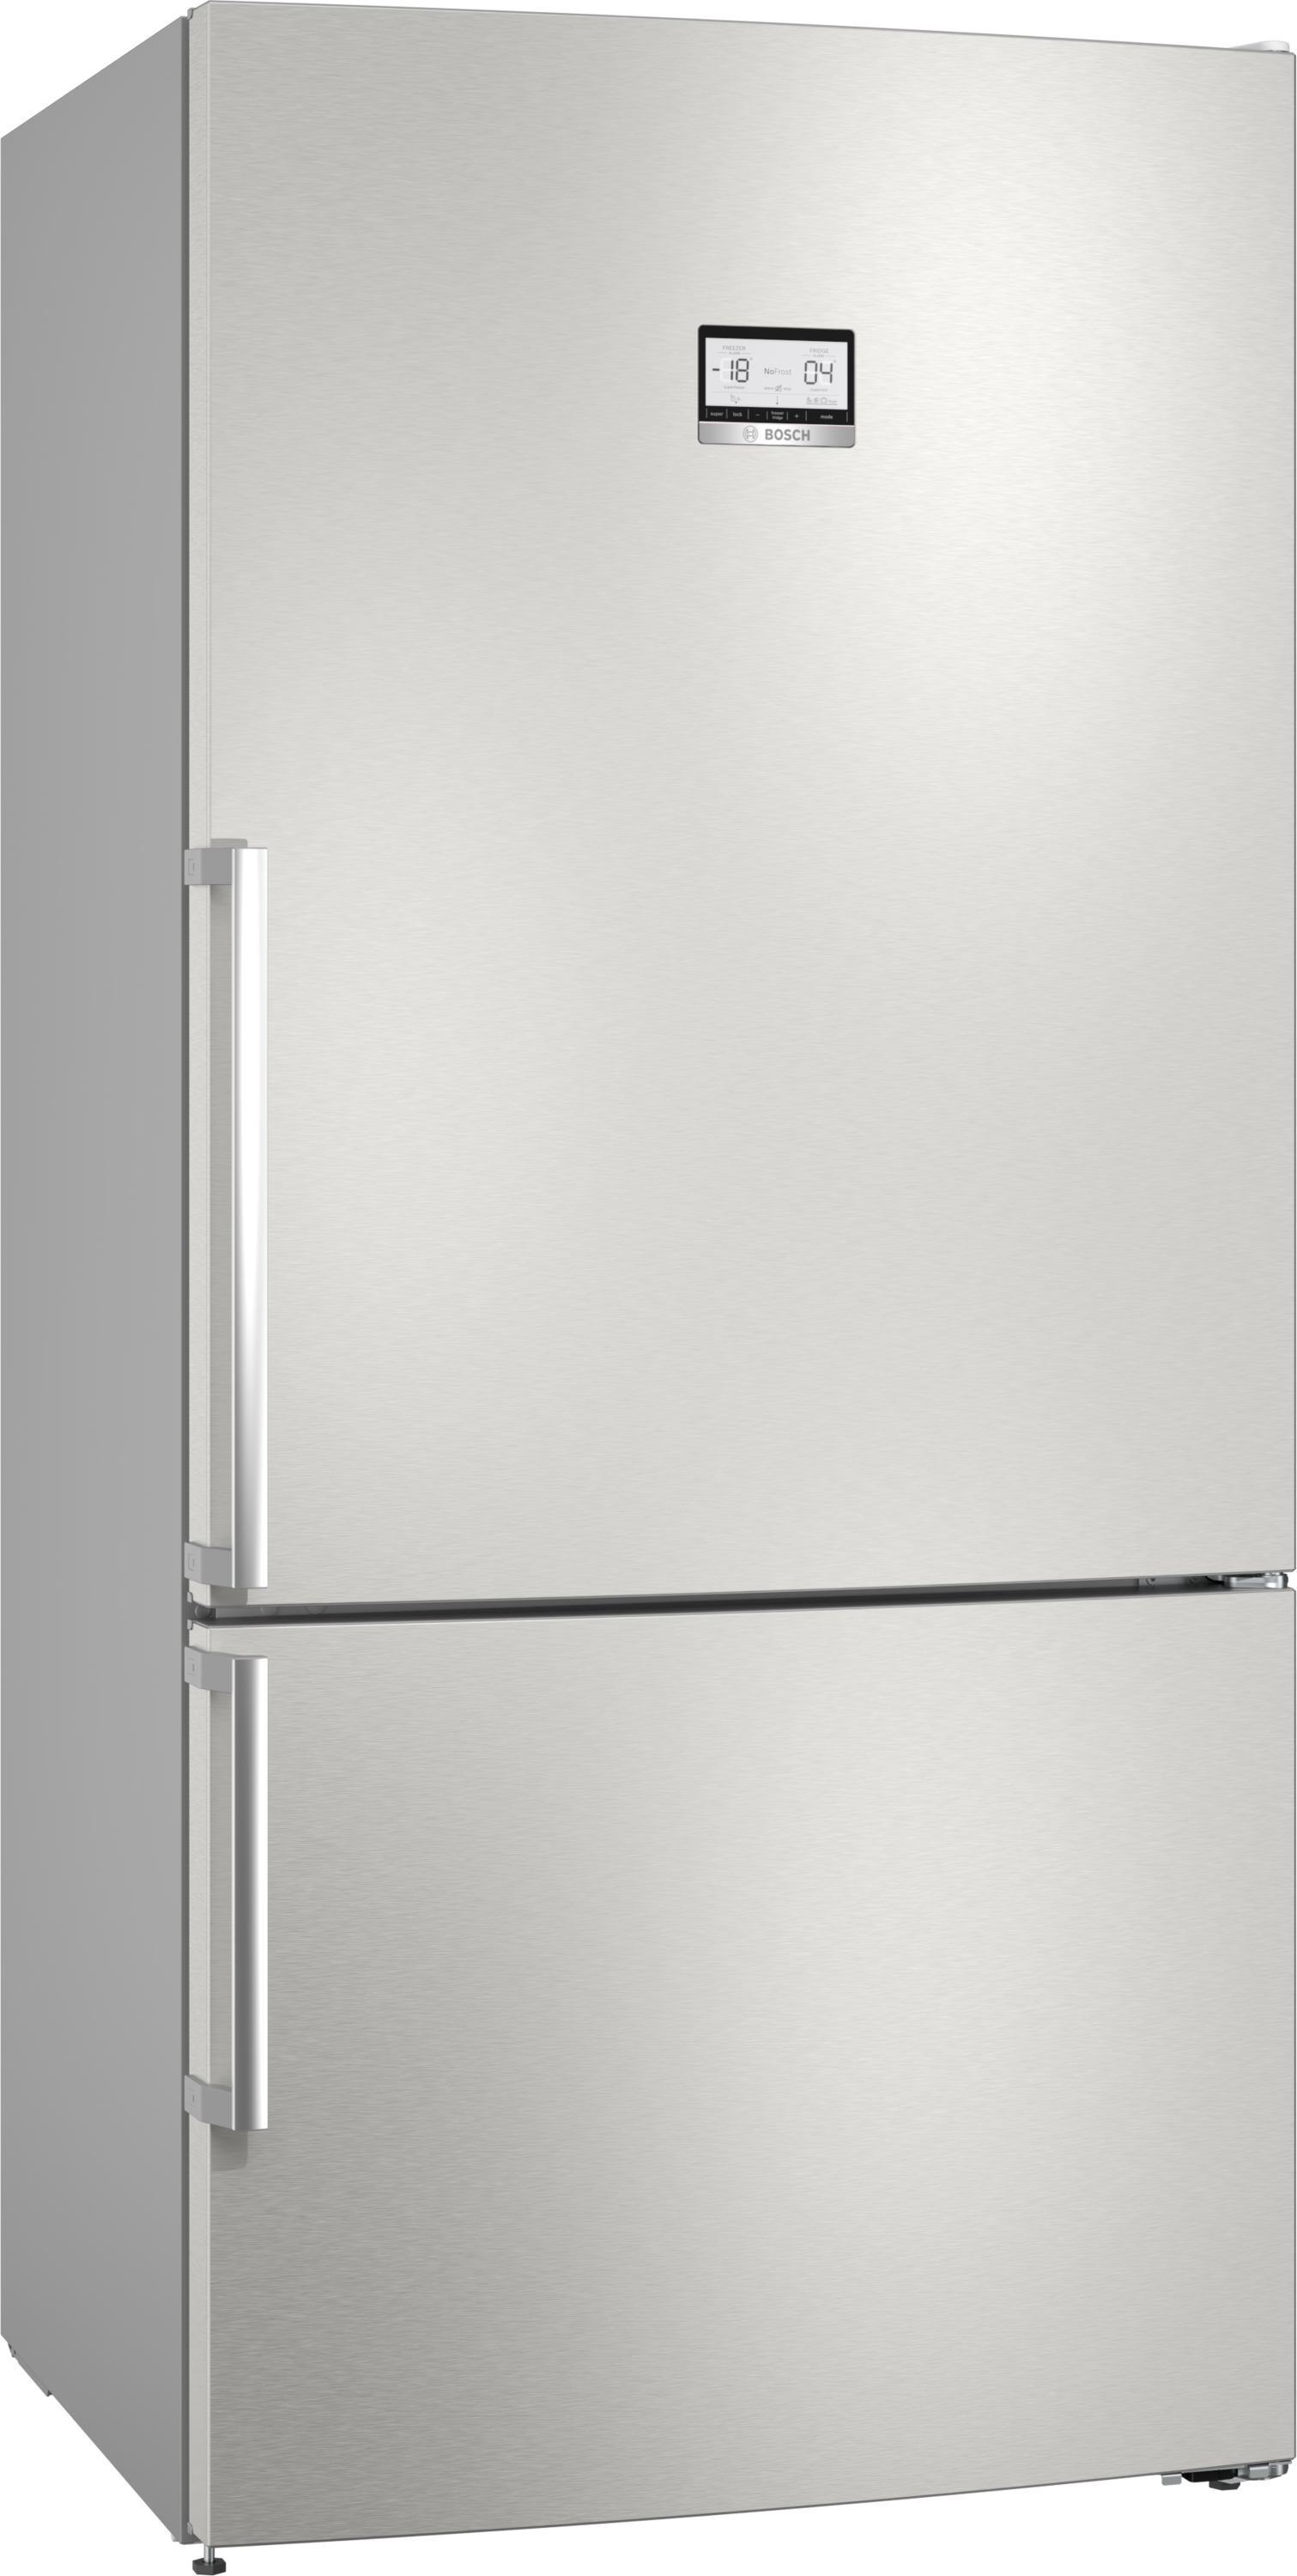 KGN86AIDR,Combină frigorifică independentă, 186 x 86 cm, Inox- easyclean,serie 6 